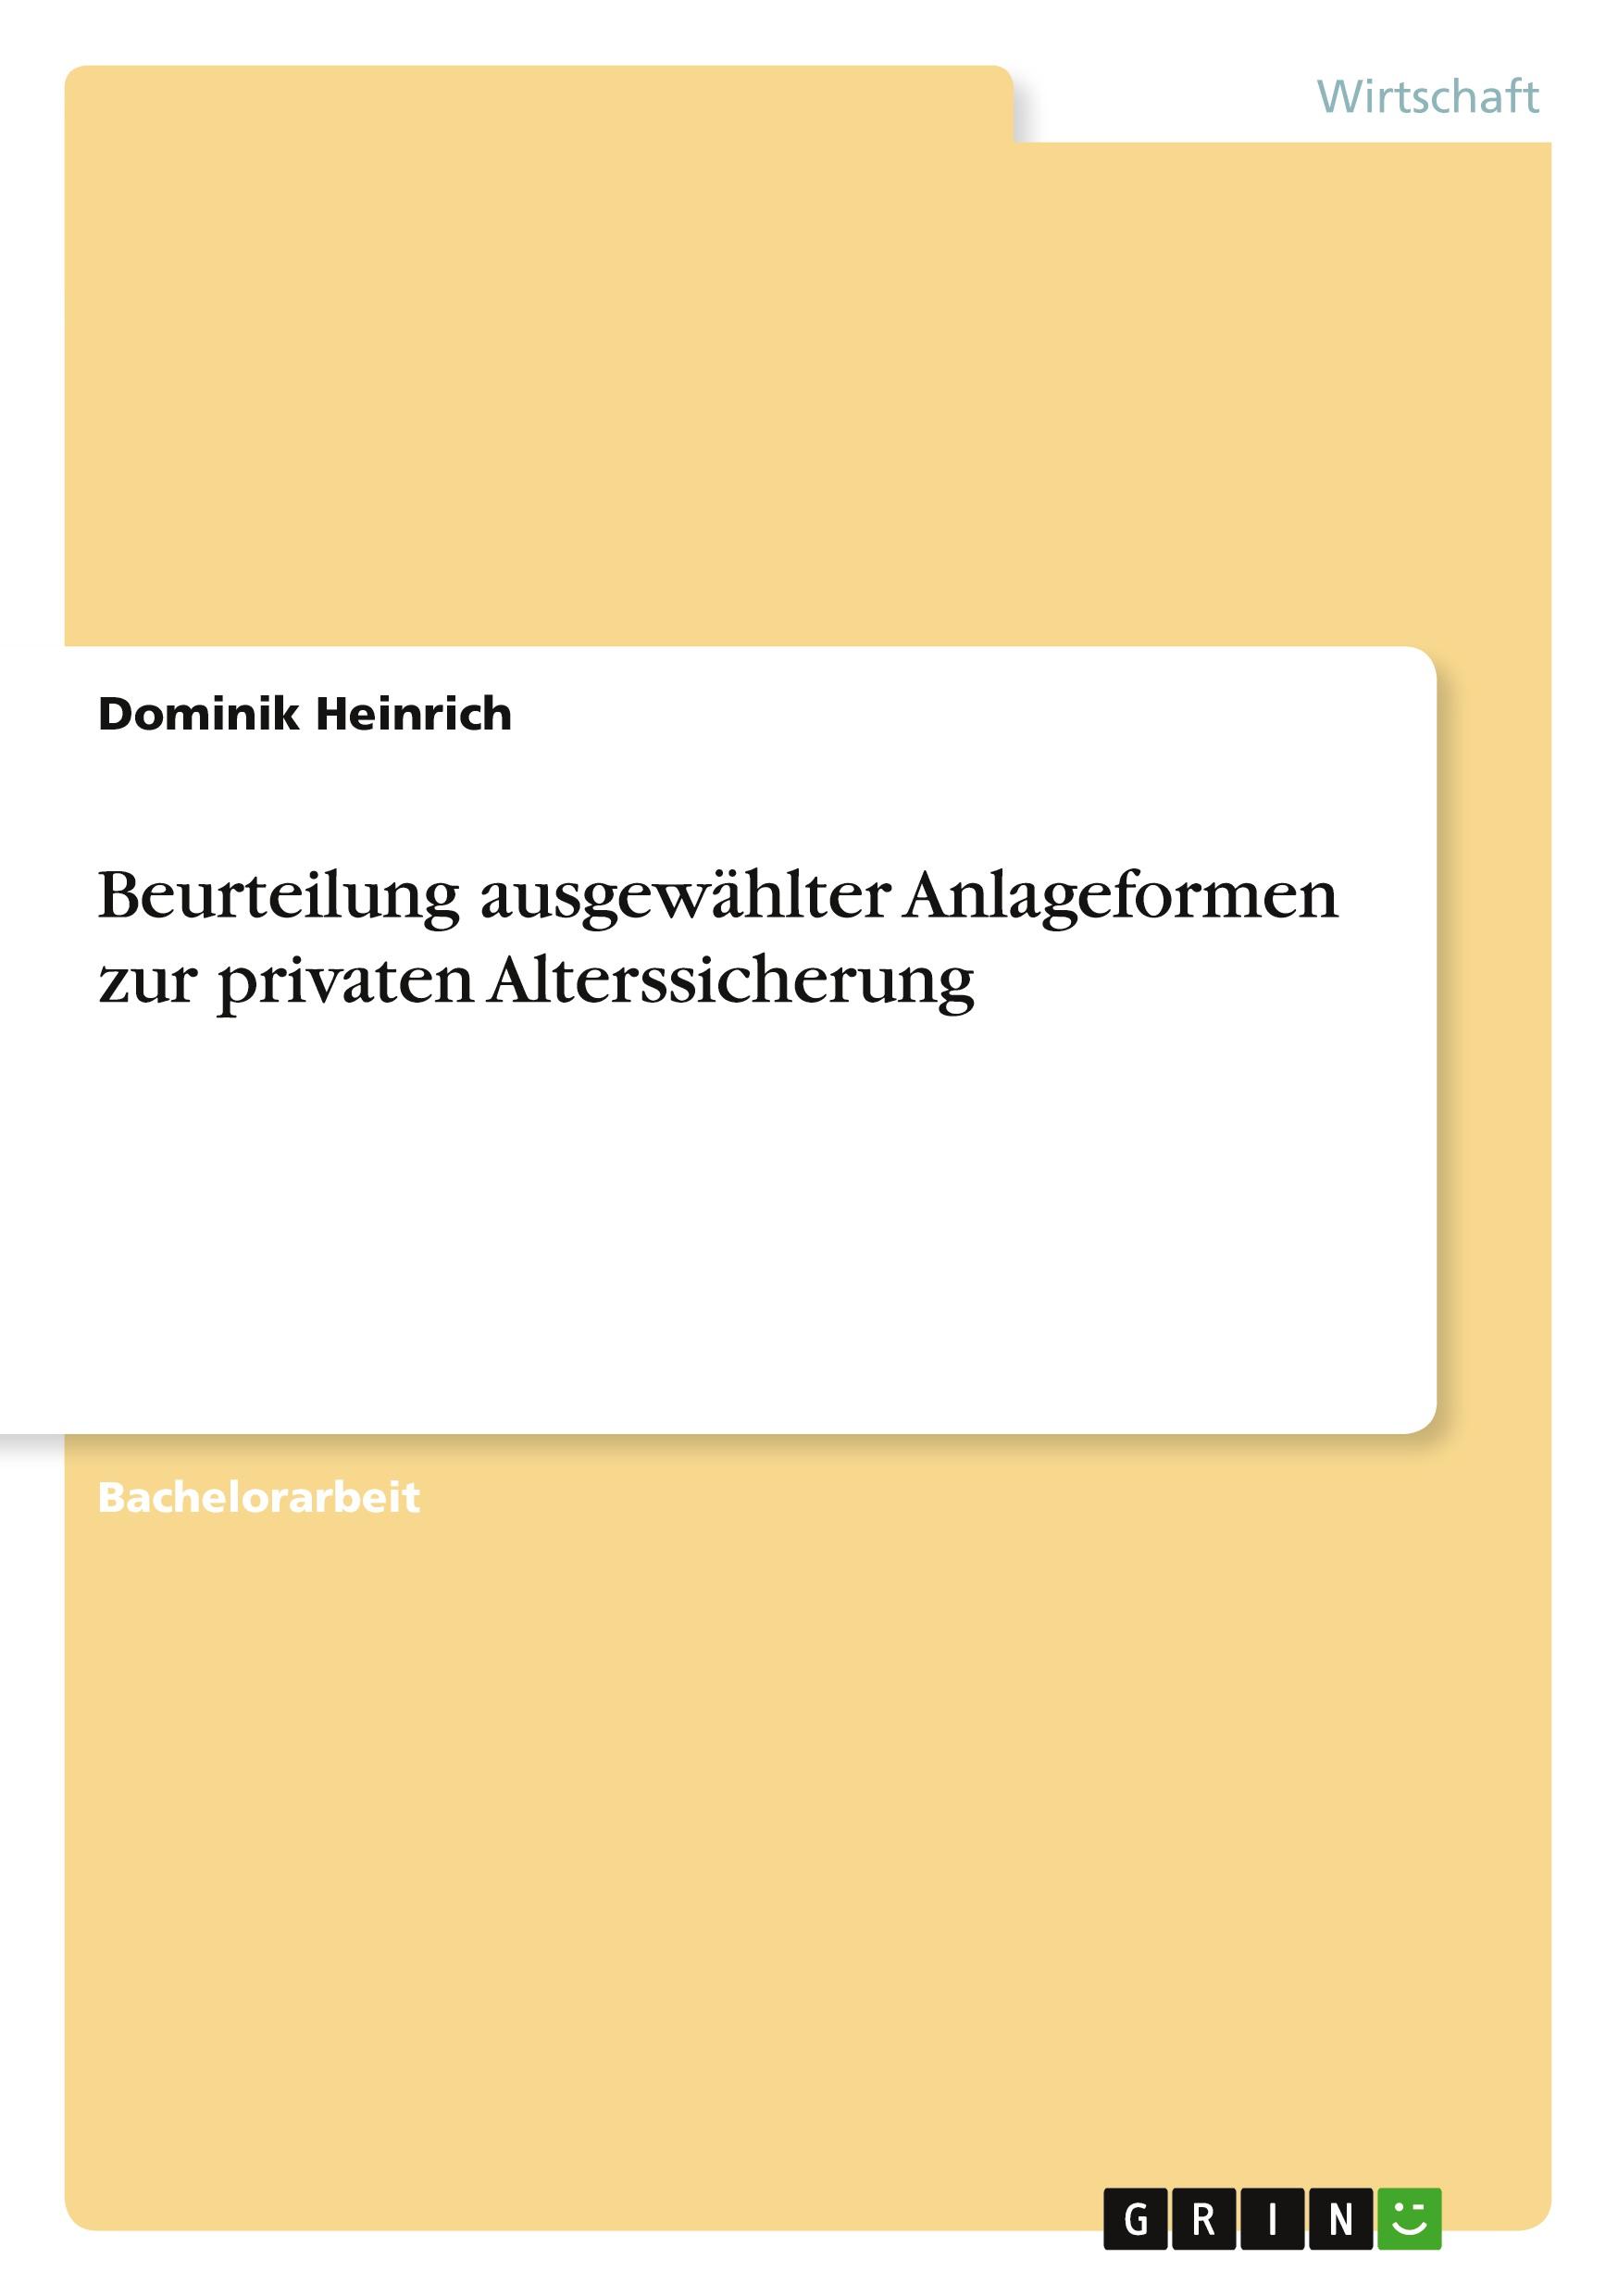 Beurteilung ausgewählter Anlageformen zur privaten Alterssicherung  Dominik Heinrich  Taschenbuch  Deutsch  2010 - Heinrich, Dominik